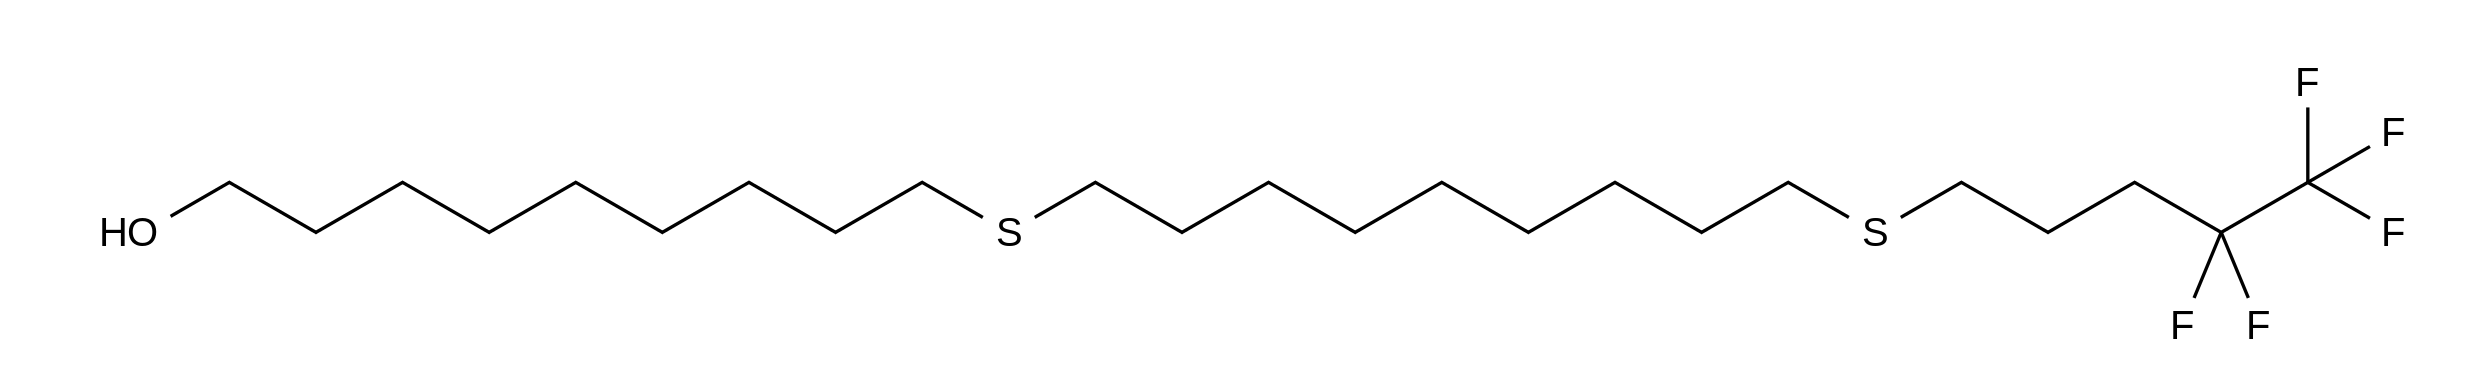 9-[[9-[(4,4,5,5,5-Pentafluoropentyl)sulfenyl]nonyl]sulfenyl]nonanol